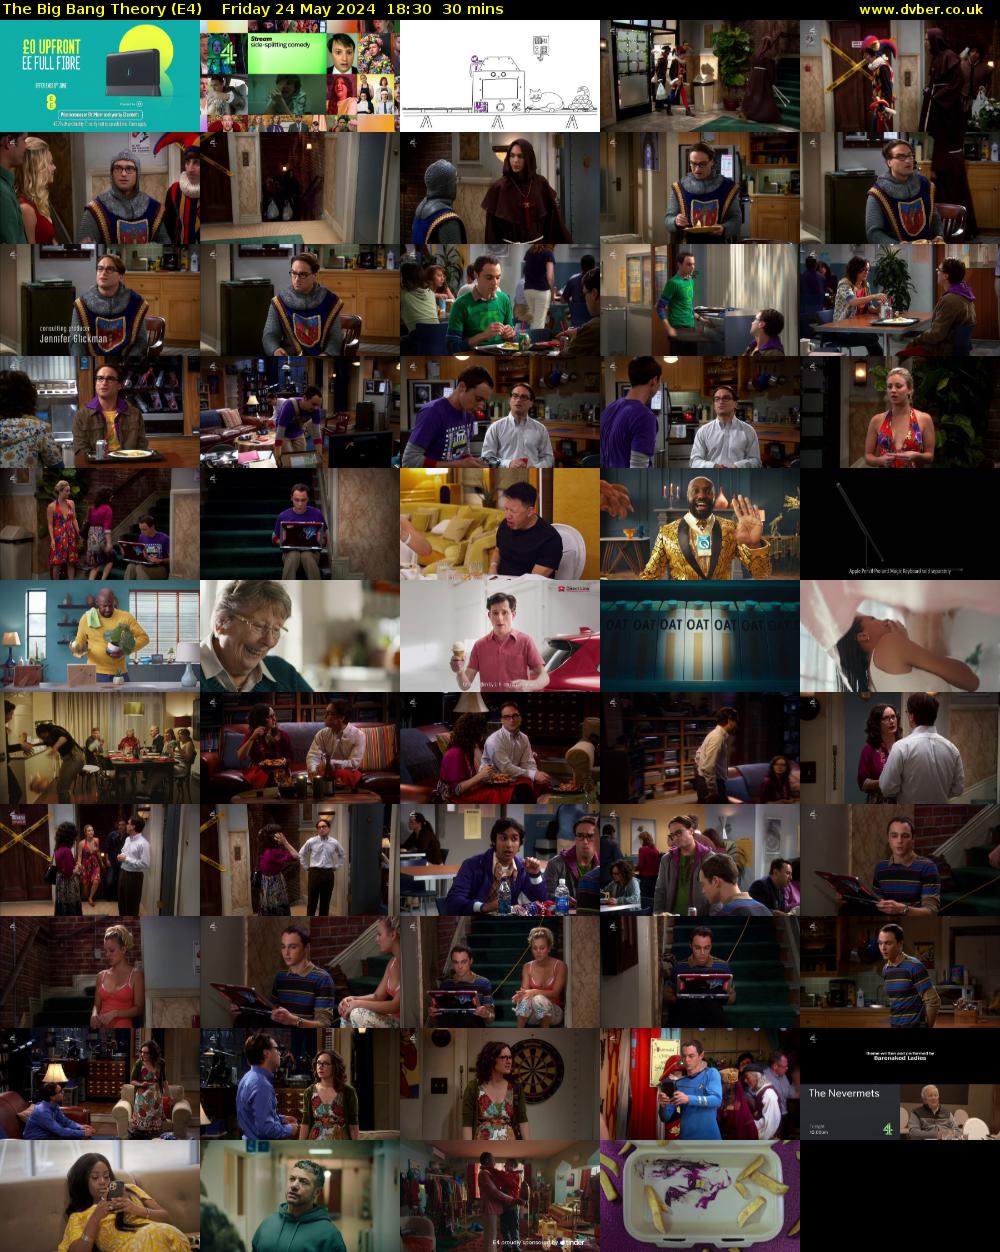 The Big Bang Theory (E4) Friday 24 May 2024 18:30 - 19:00